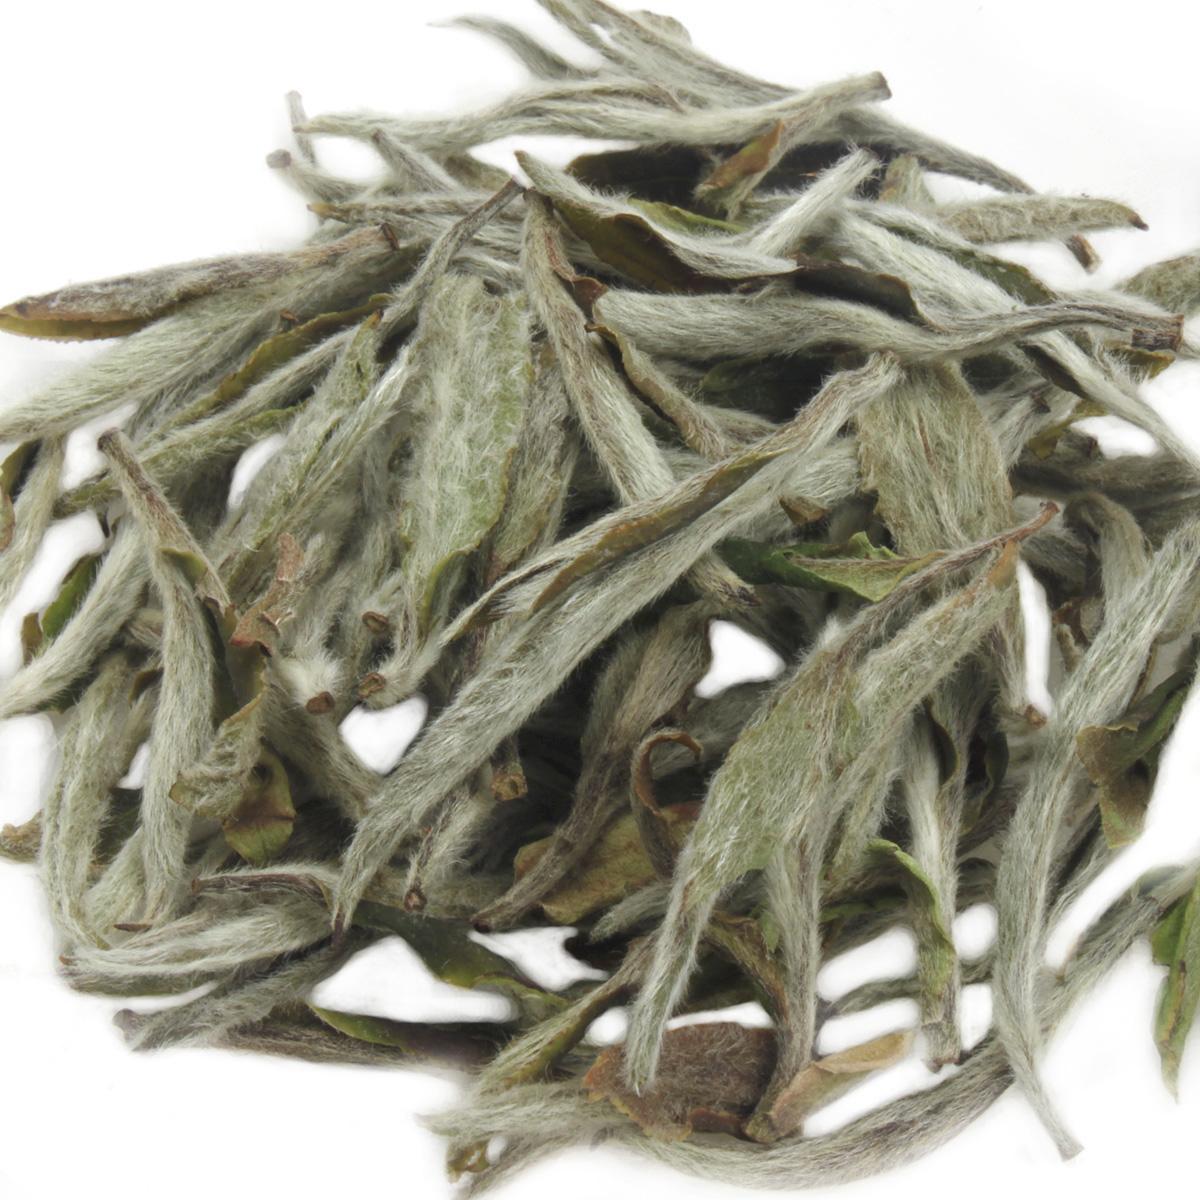 寿眉茶属于发酵茶